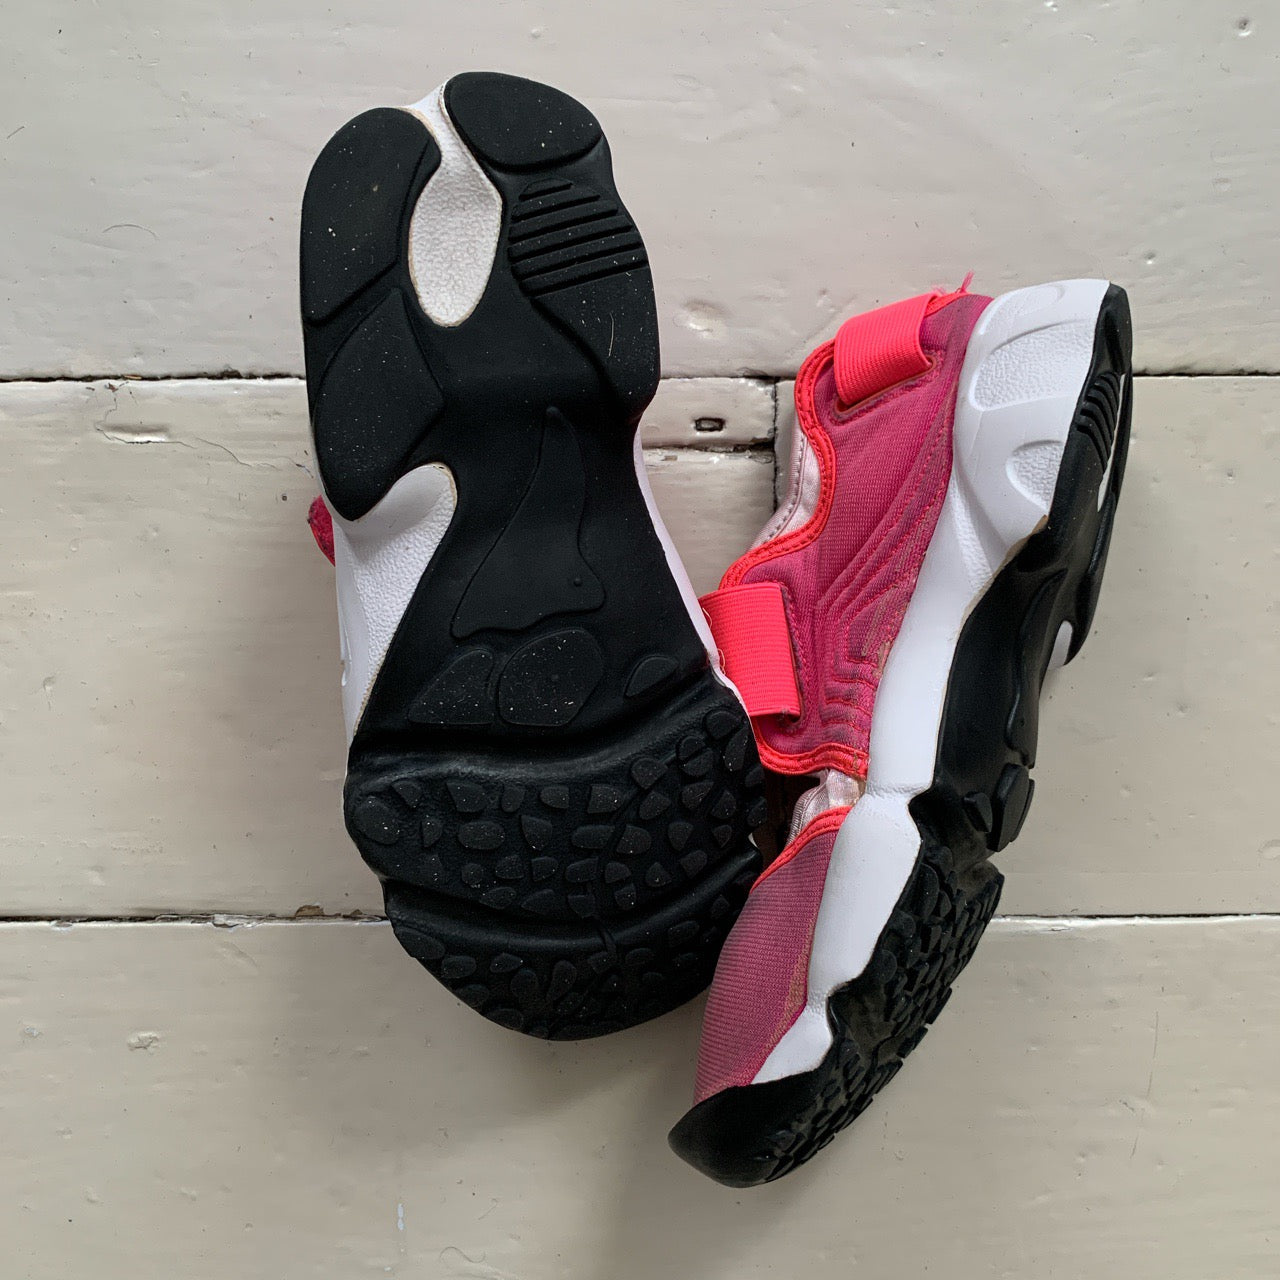 Nike Air Rift Pink 2018 (UK 4.5)